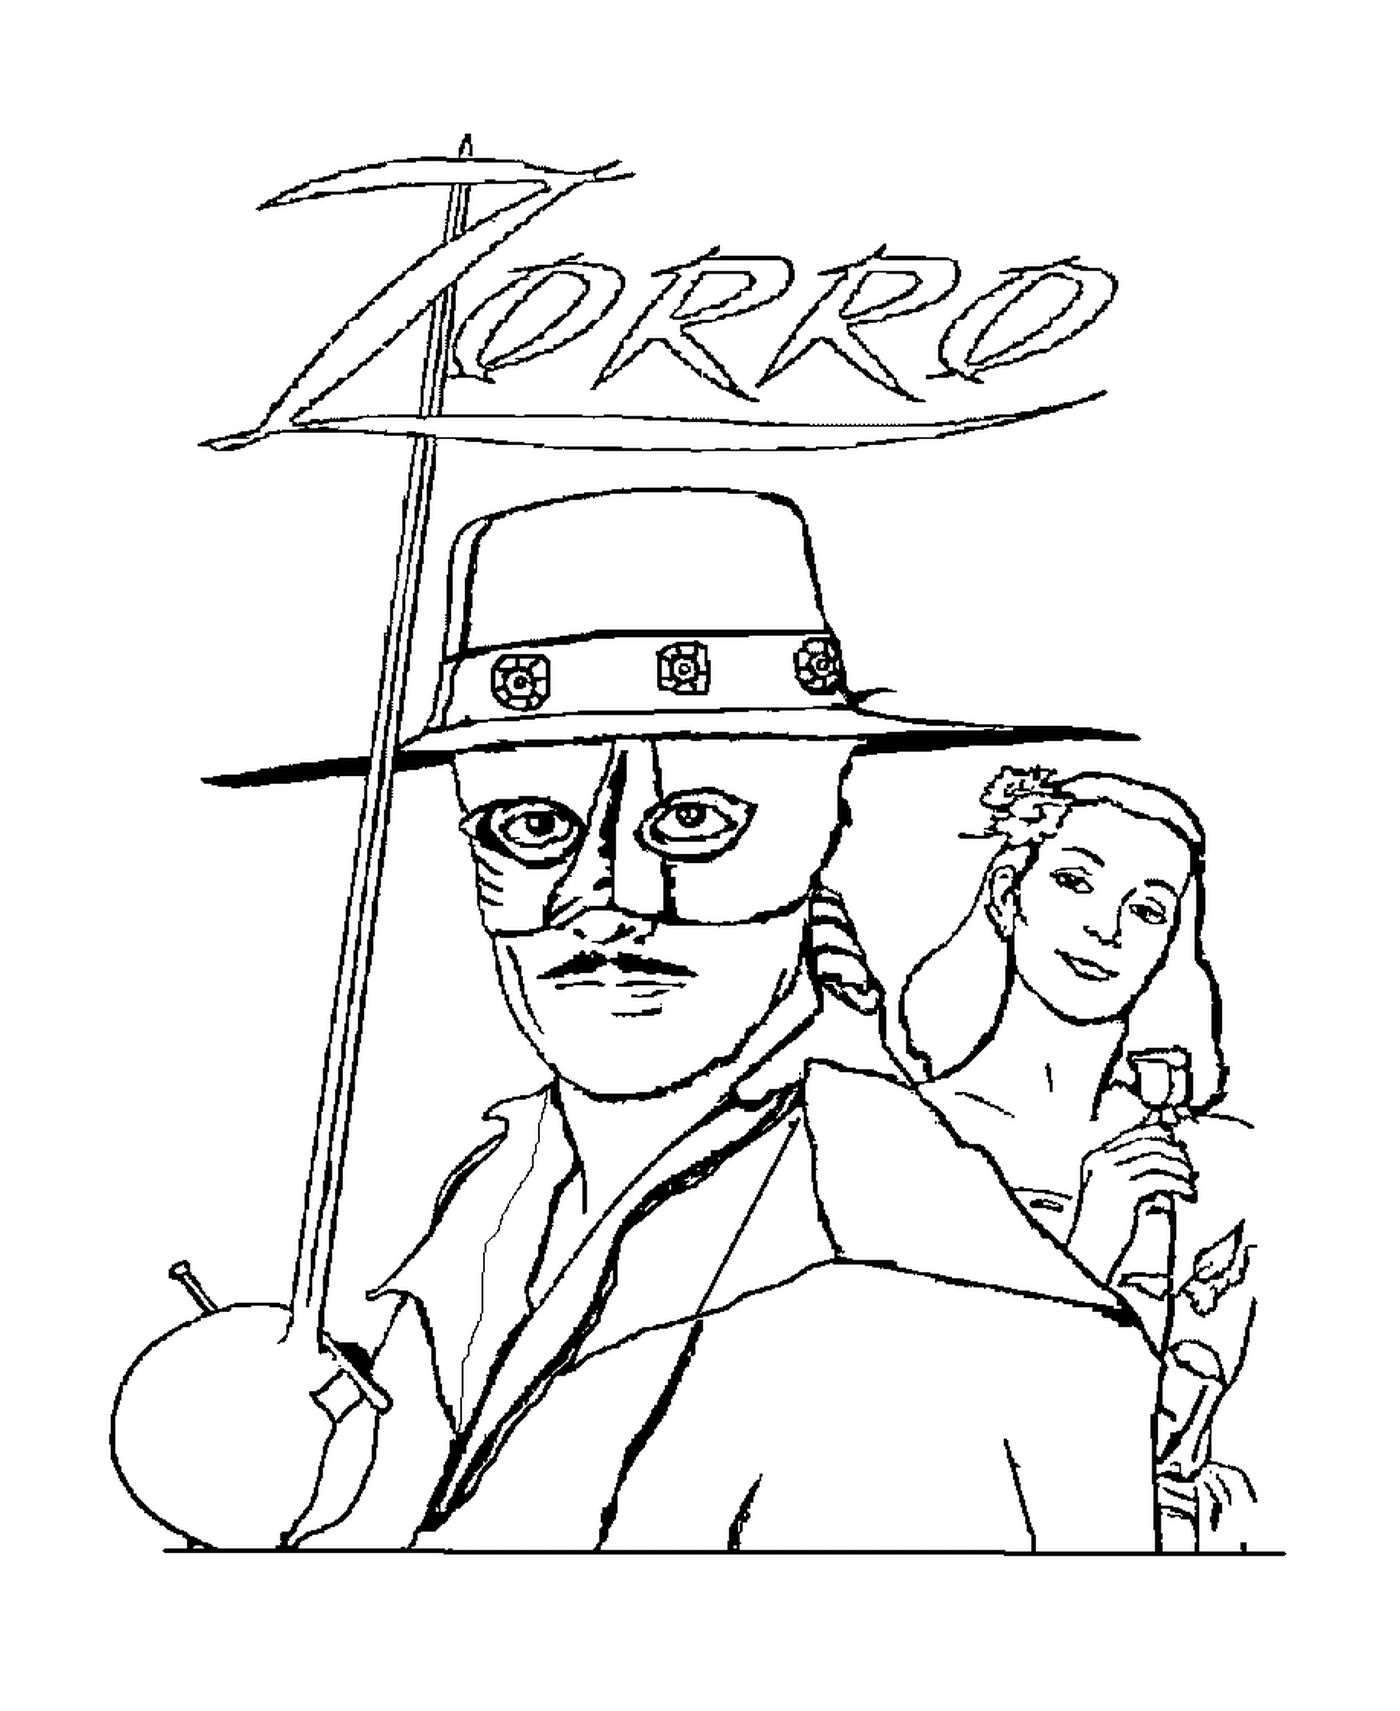  Zorro o vigilante mascarado e um homem 